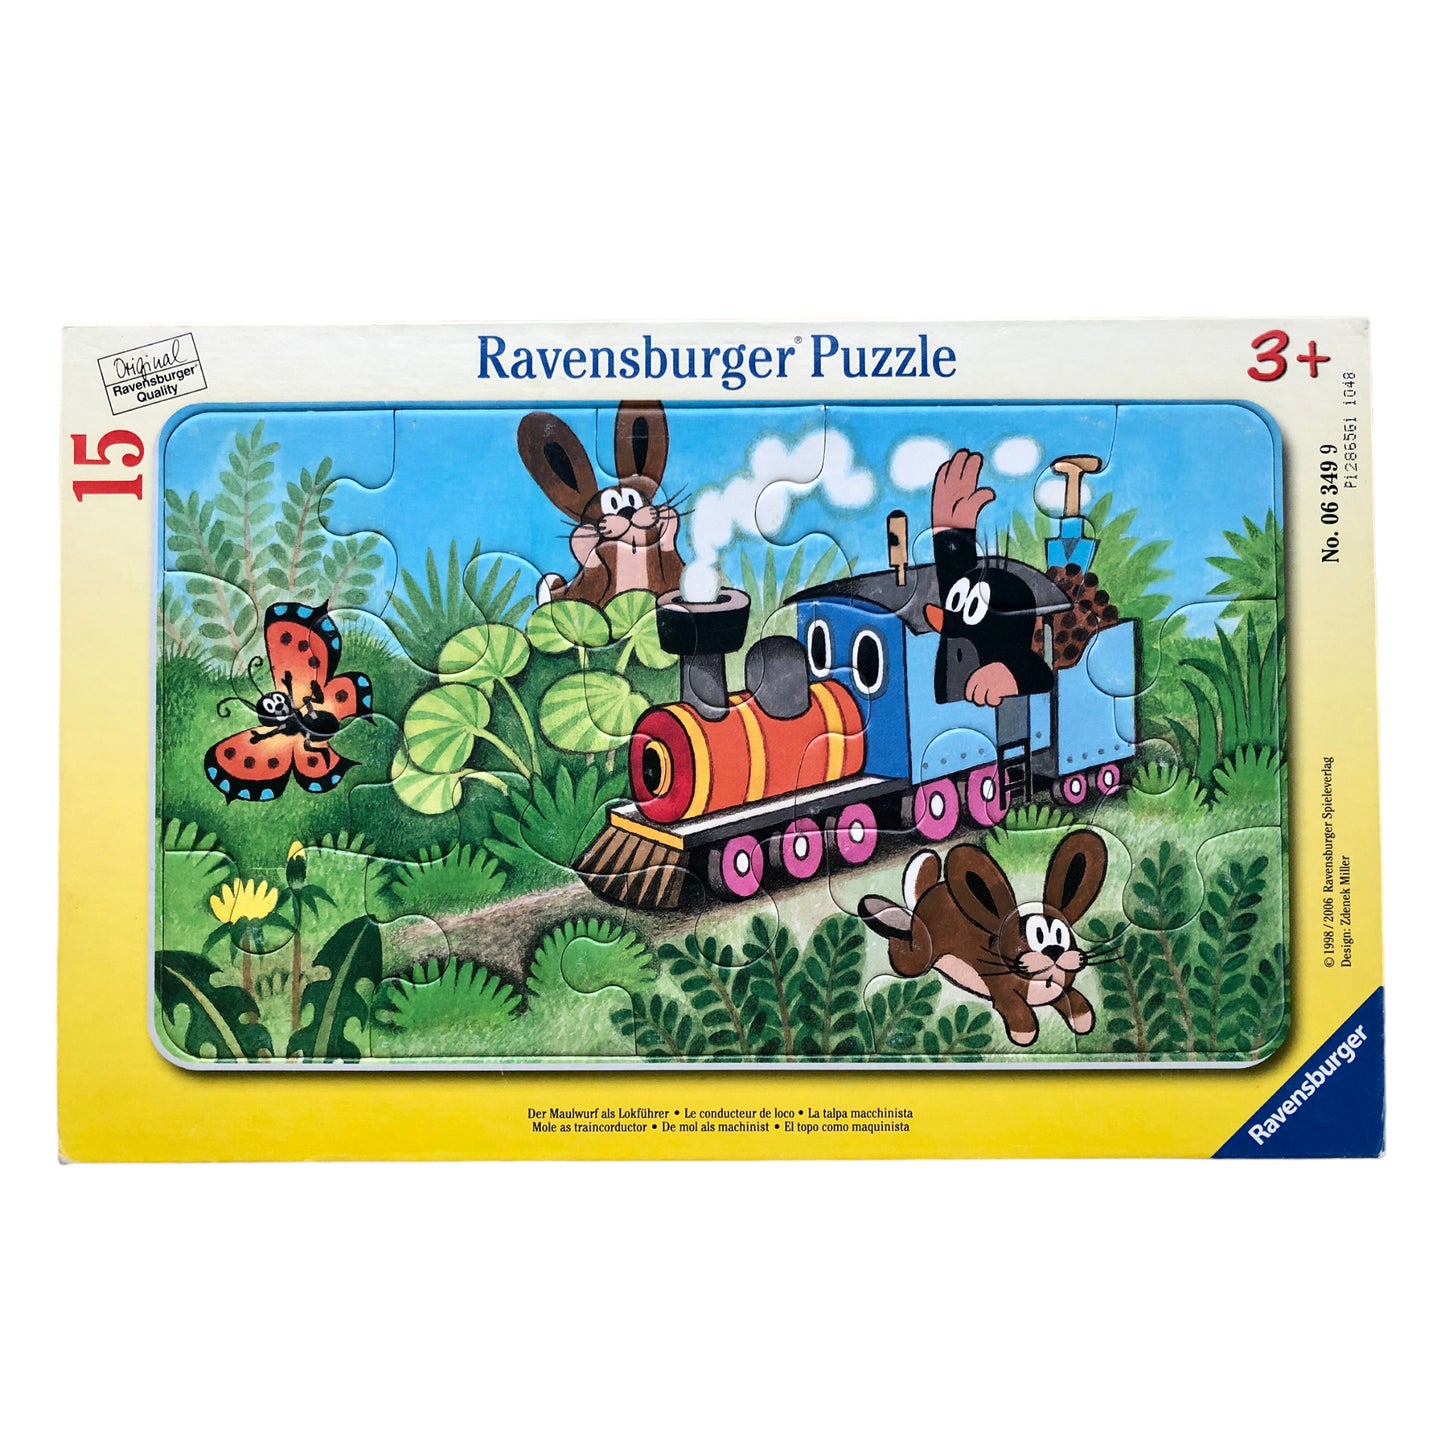 Ravensburger Puzzle - Mole as traincorductor - 15 pieces